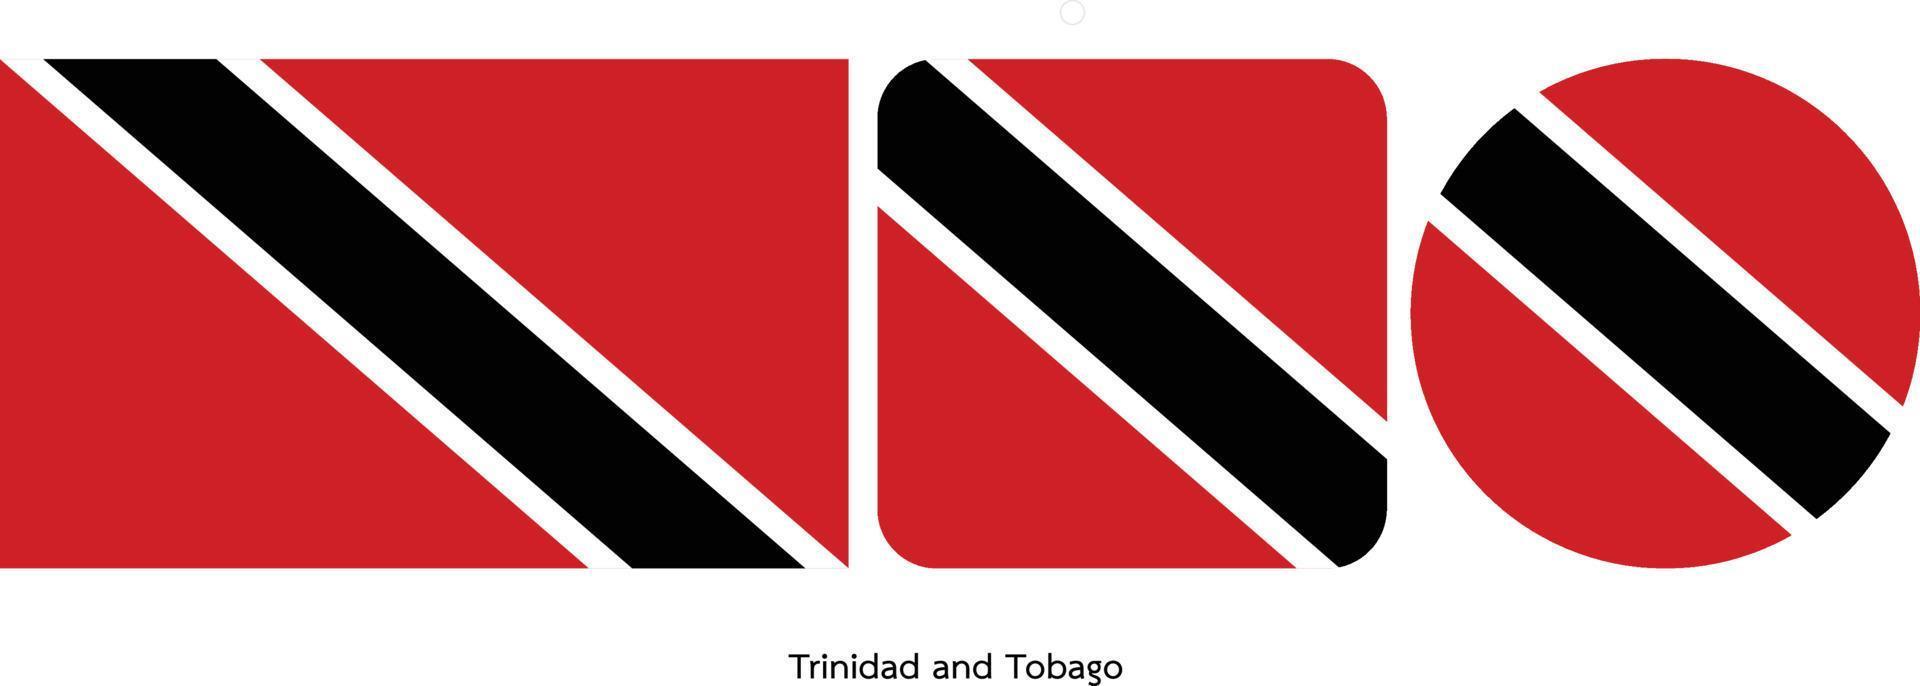 Drapeau de la Trinité-et-Tobago, illustration vectorielle vecteur